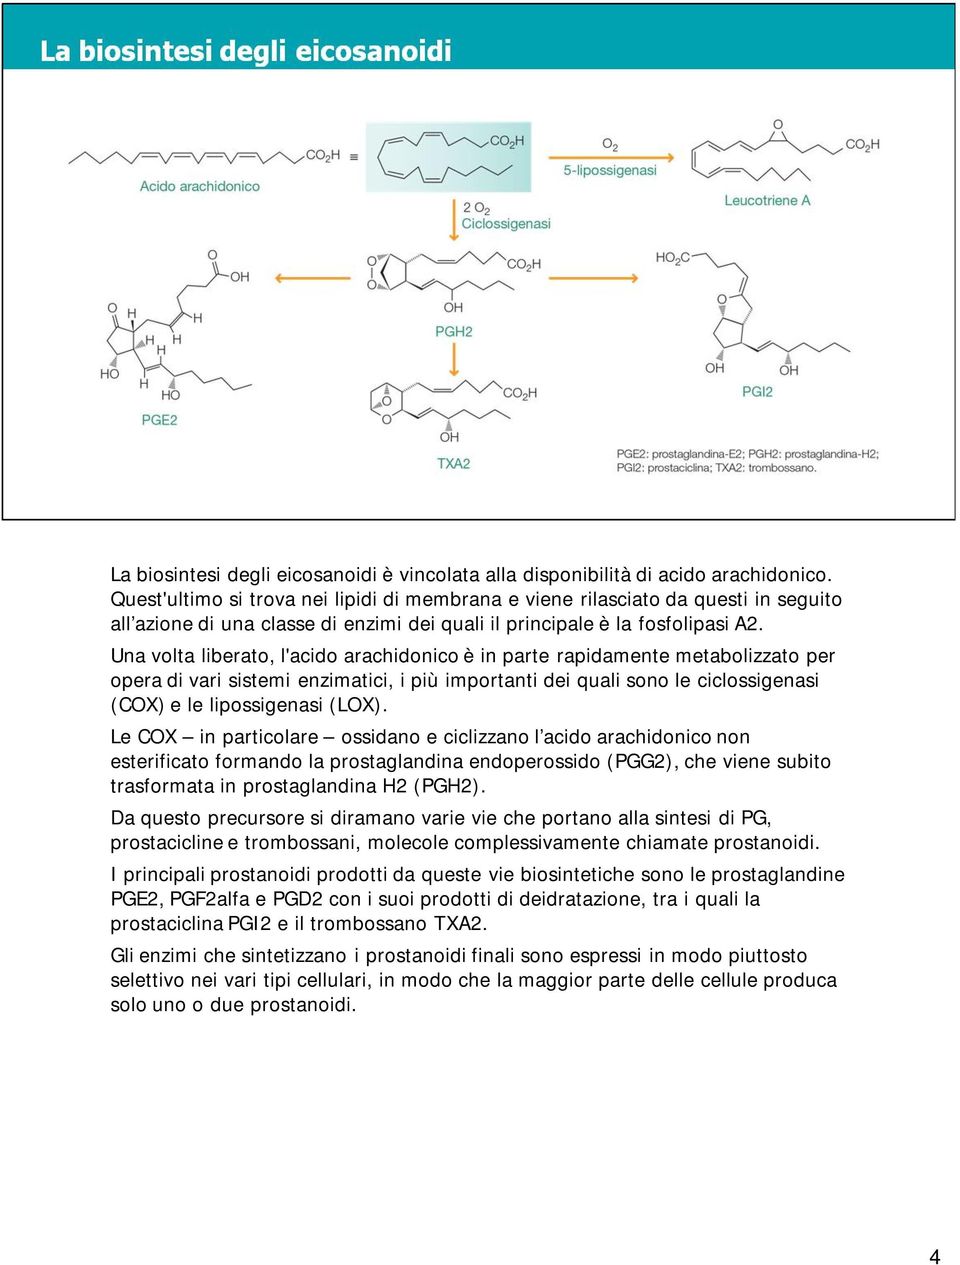 Una volta liberato, l'acido arachidonico è in parte rapidamente metabolizzato per opera di vari sistemi enzimatici, i più importanti dei quali sono le ciclossigenasi (COX) e le lipossigenasi (LOX).